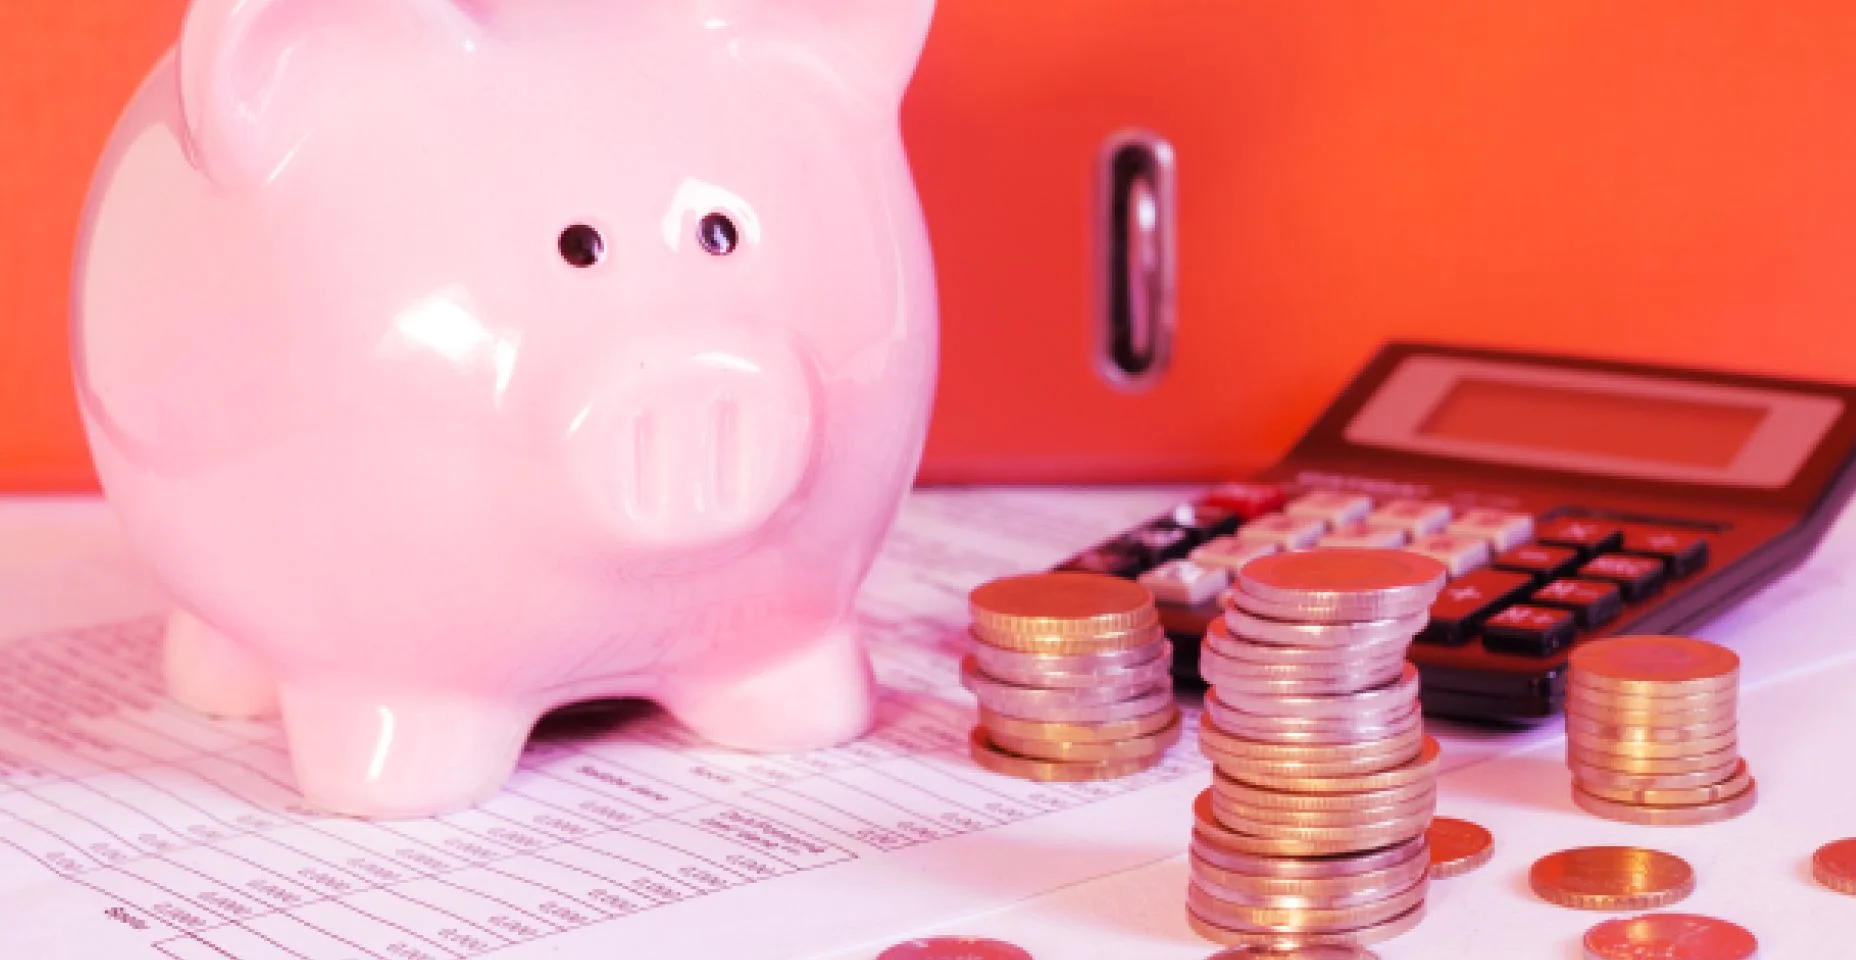 Porquinho de dinheiro ao lado de uma calculadora para ilustrar o artigo sobre 12 dicas para economizar dinheiro no seu dia a dia